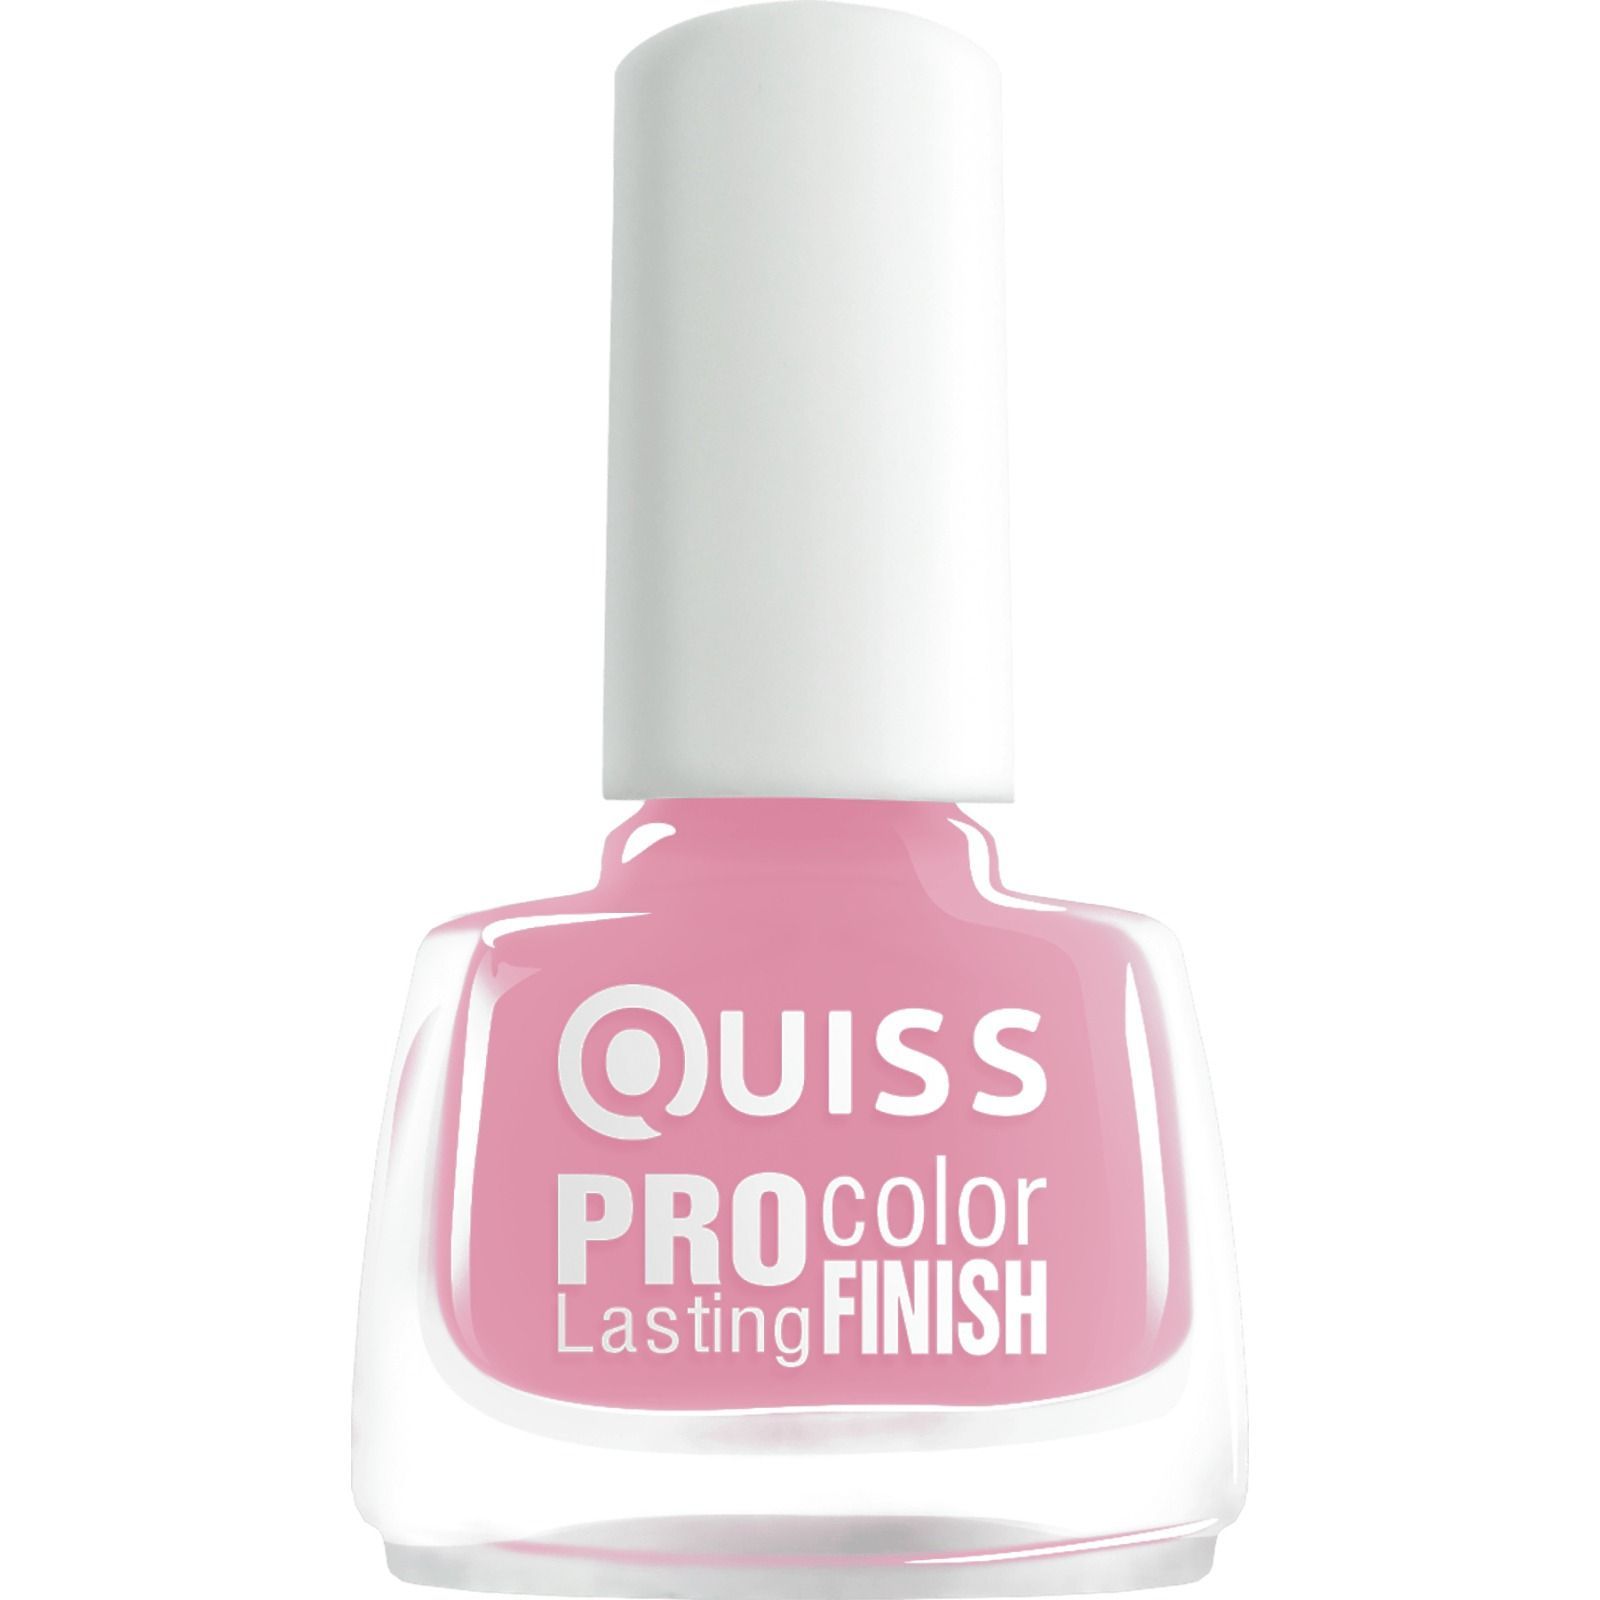 Лак для нігтів Quiss Pro Color Lasting Finish відтінок 68, 6 мл - фото 1